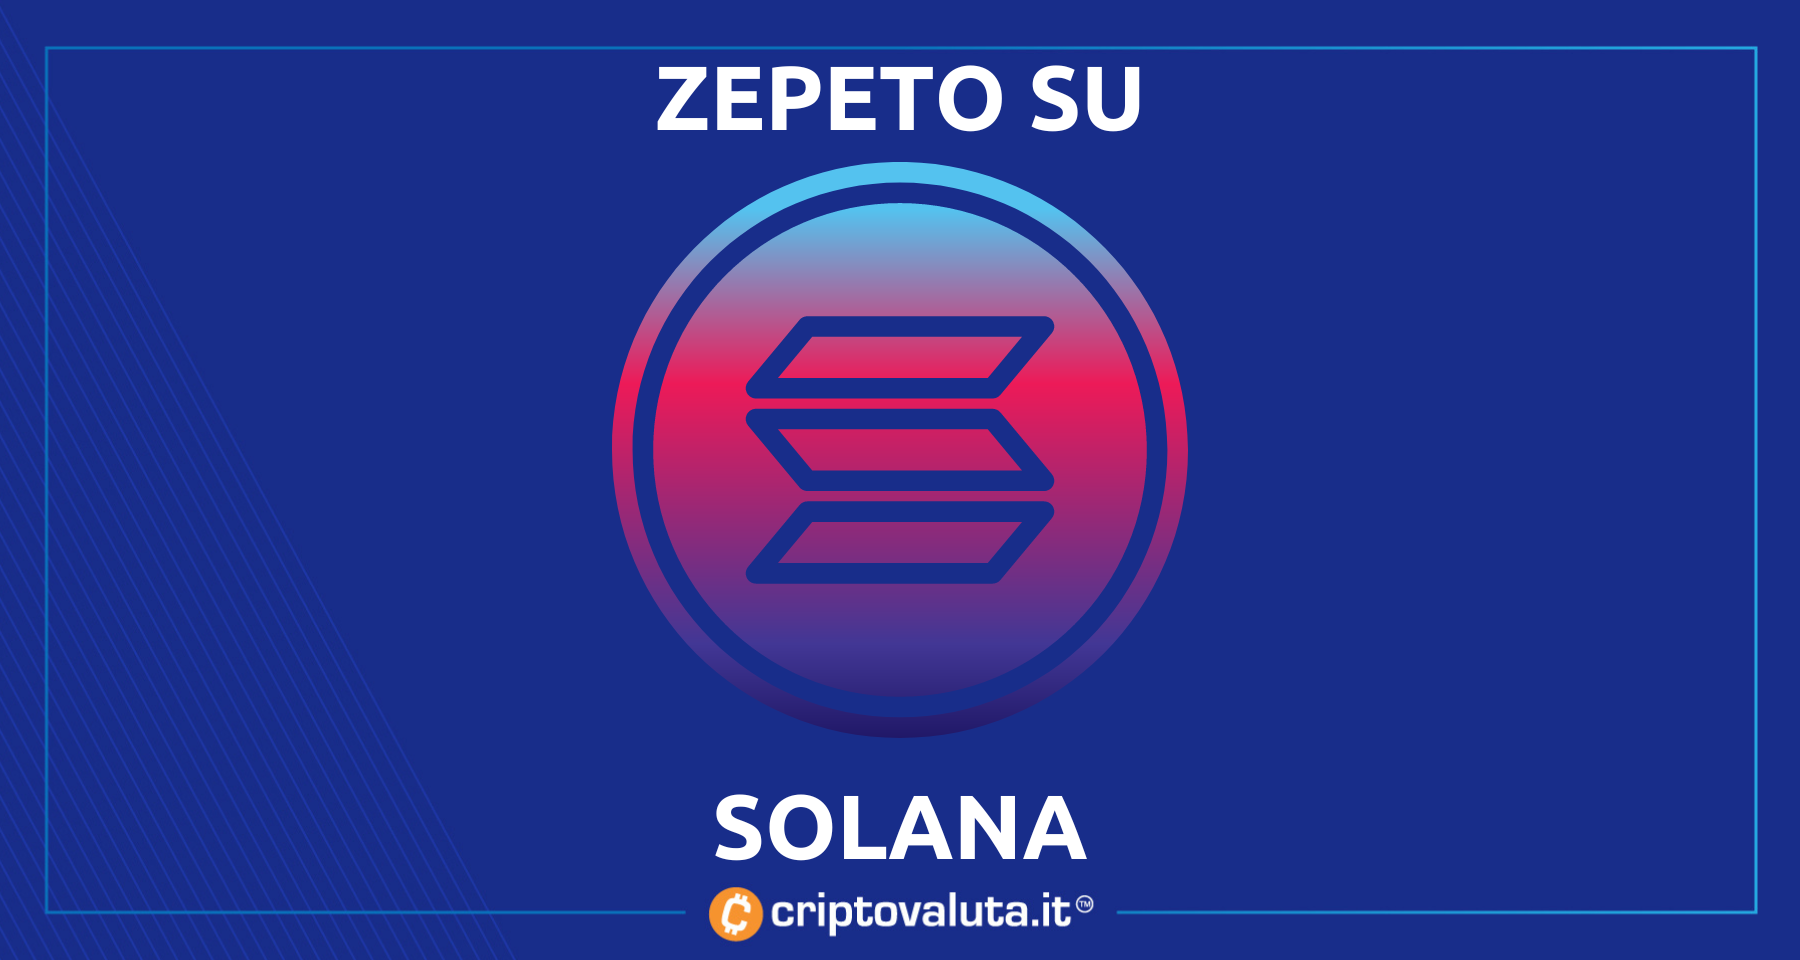 Zepeto sbarca su Solana | Notizia bullish per $SOL e per il gaming